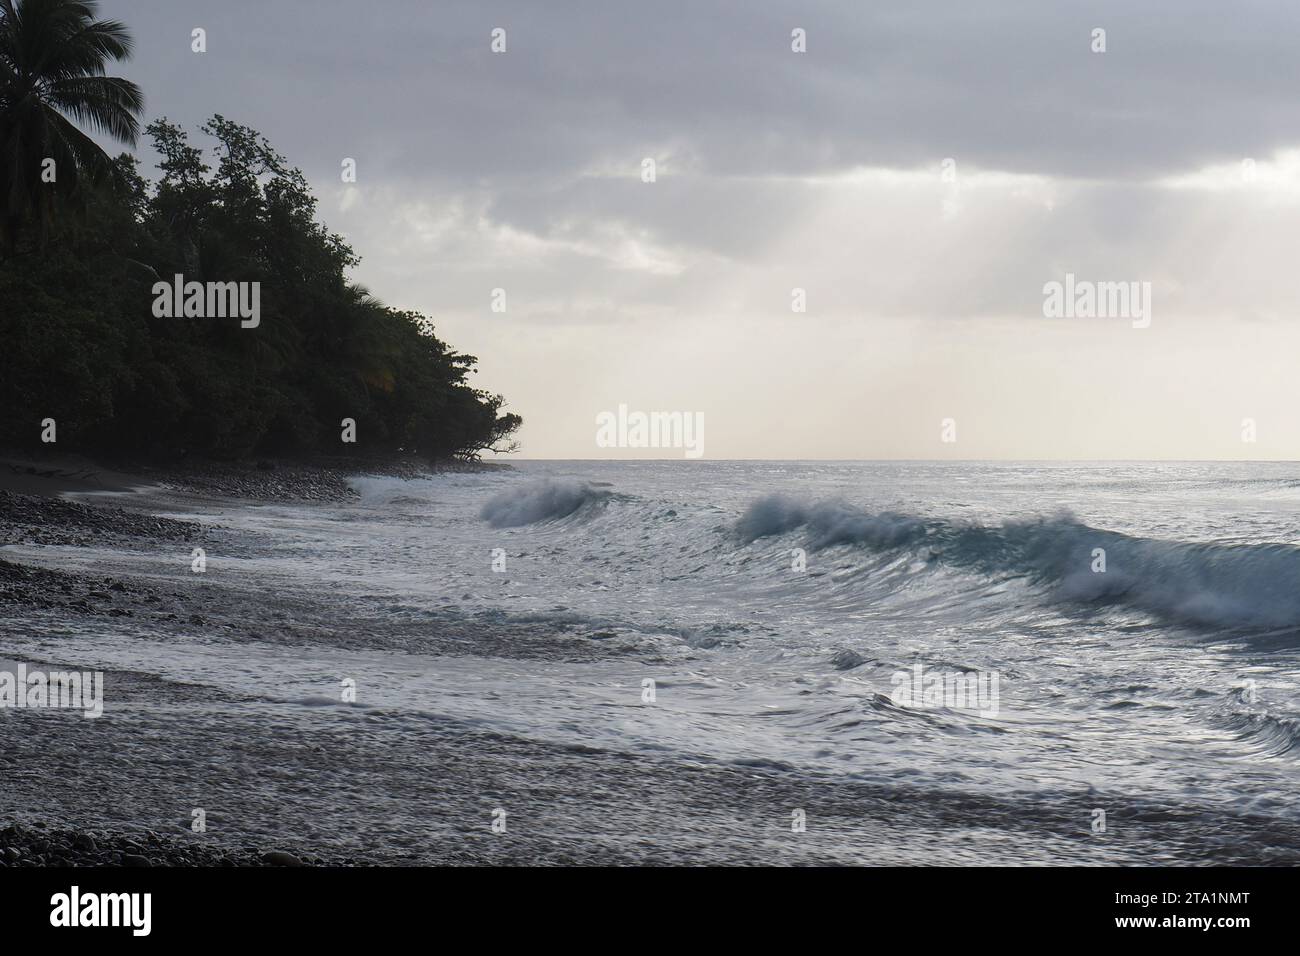 Anse couleuvre, Nord de la Martinique, plages les plus Sauvages de l'île. Sable noir volcanique et Nature exubérante Martinique, Antillen Stockfoto